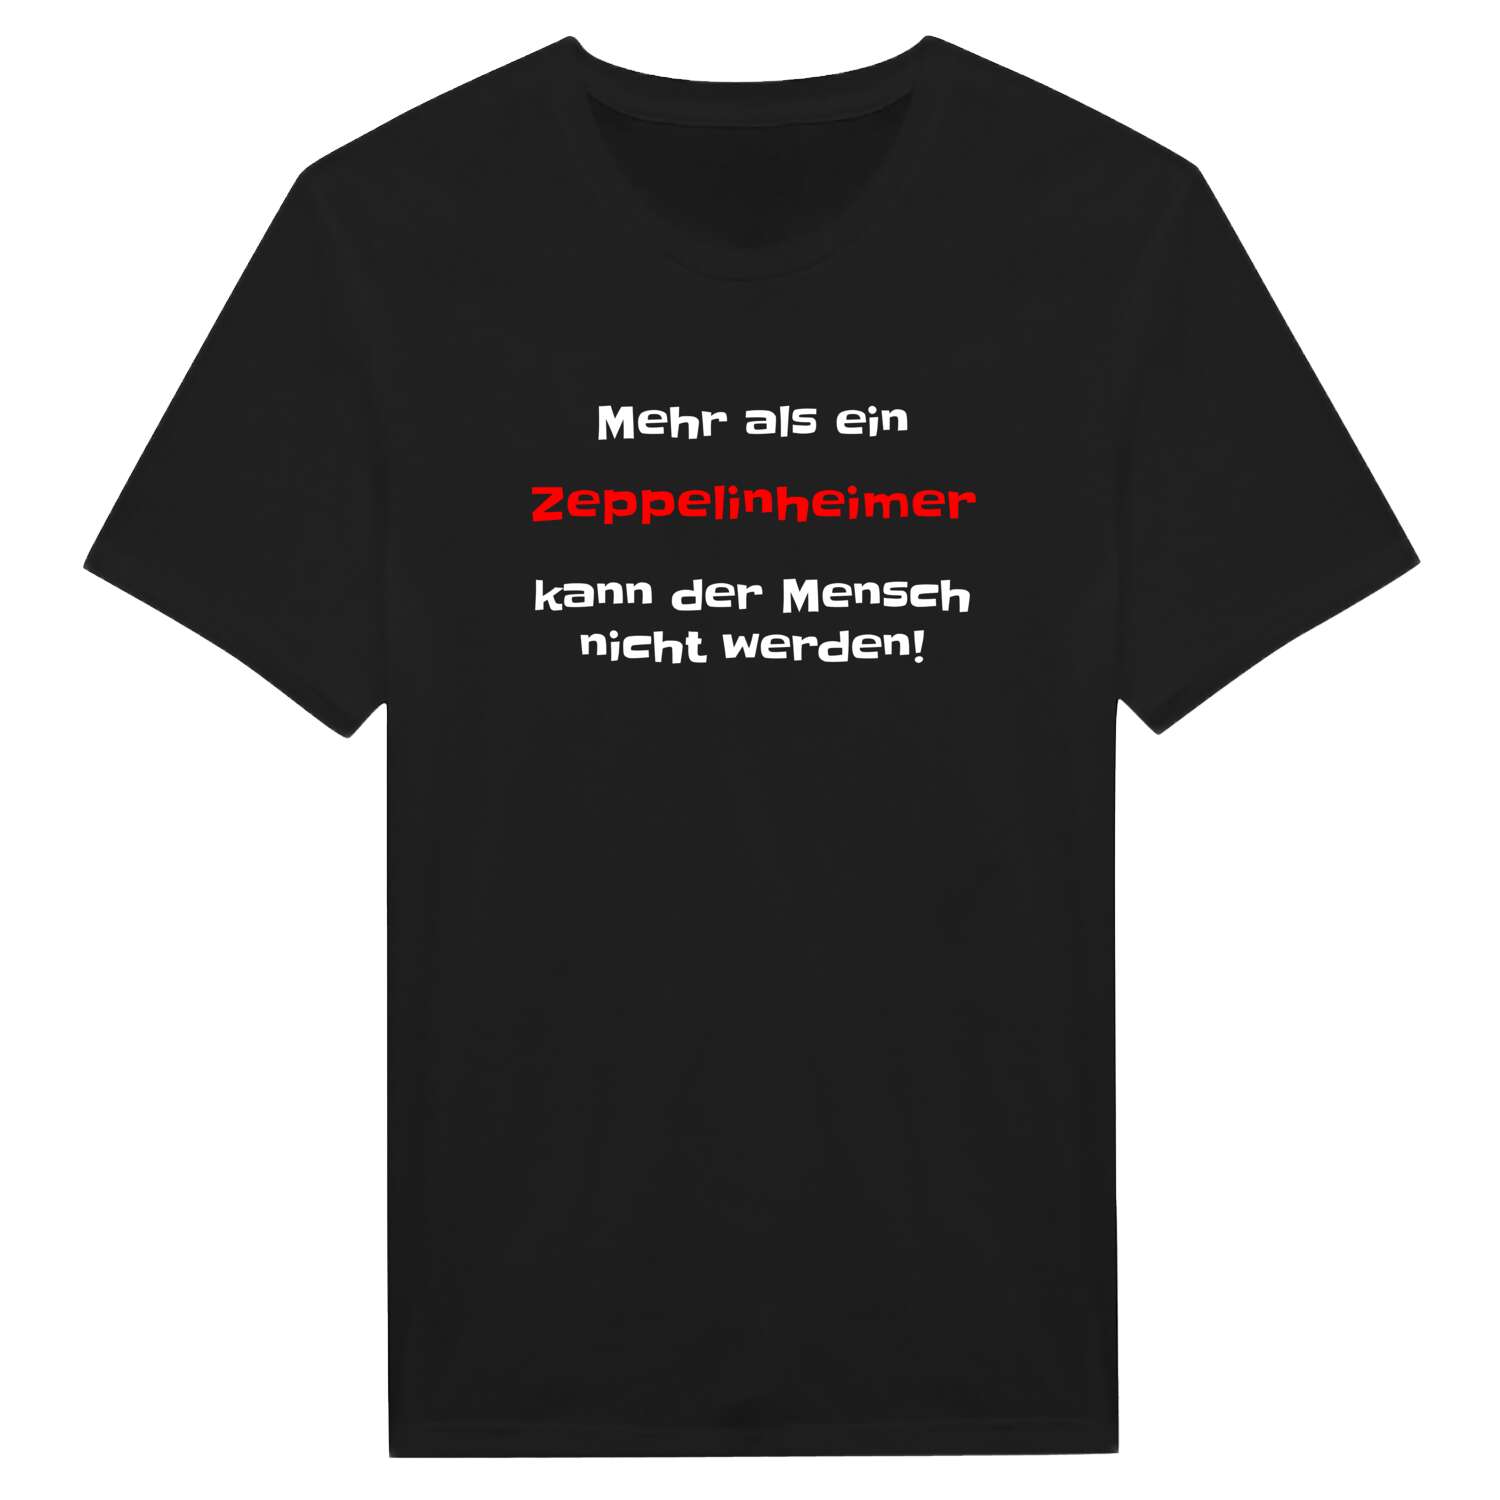 Zeppelinheim T-Shirt »Mehr als ein«